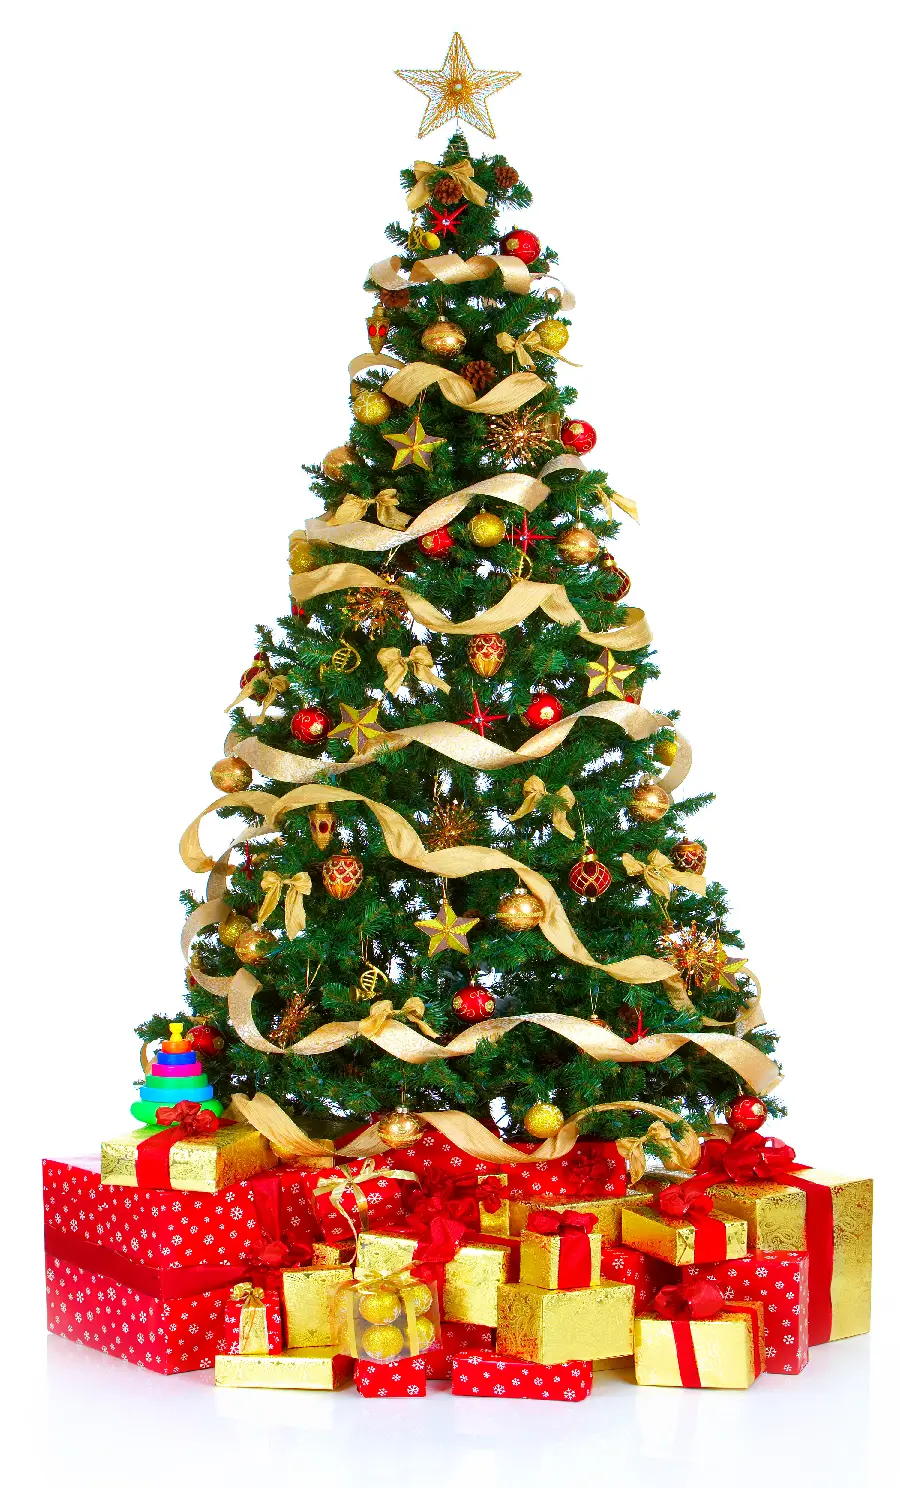 والپیپر عمودی جالب و دیدنی درخت و کادوهای کریسمس